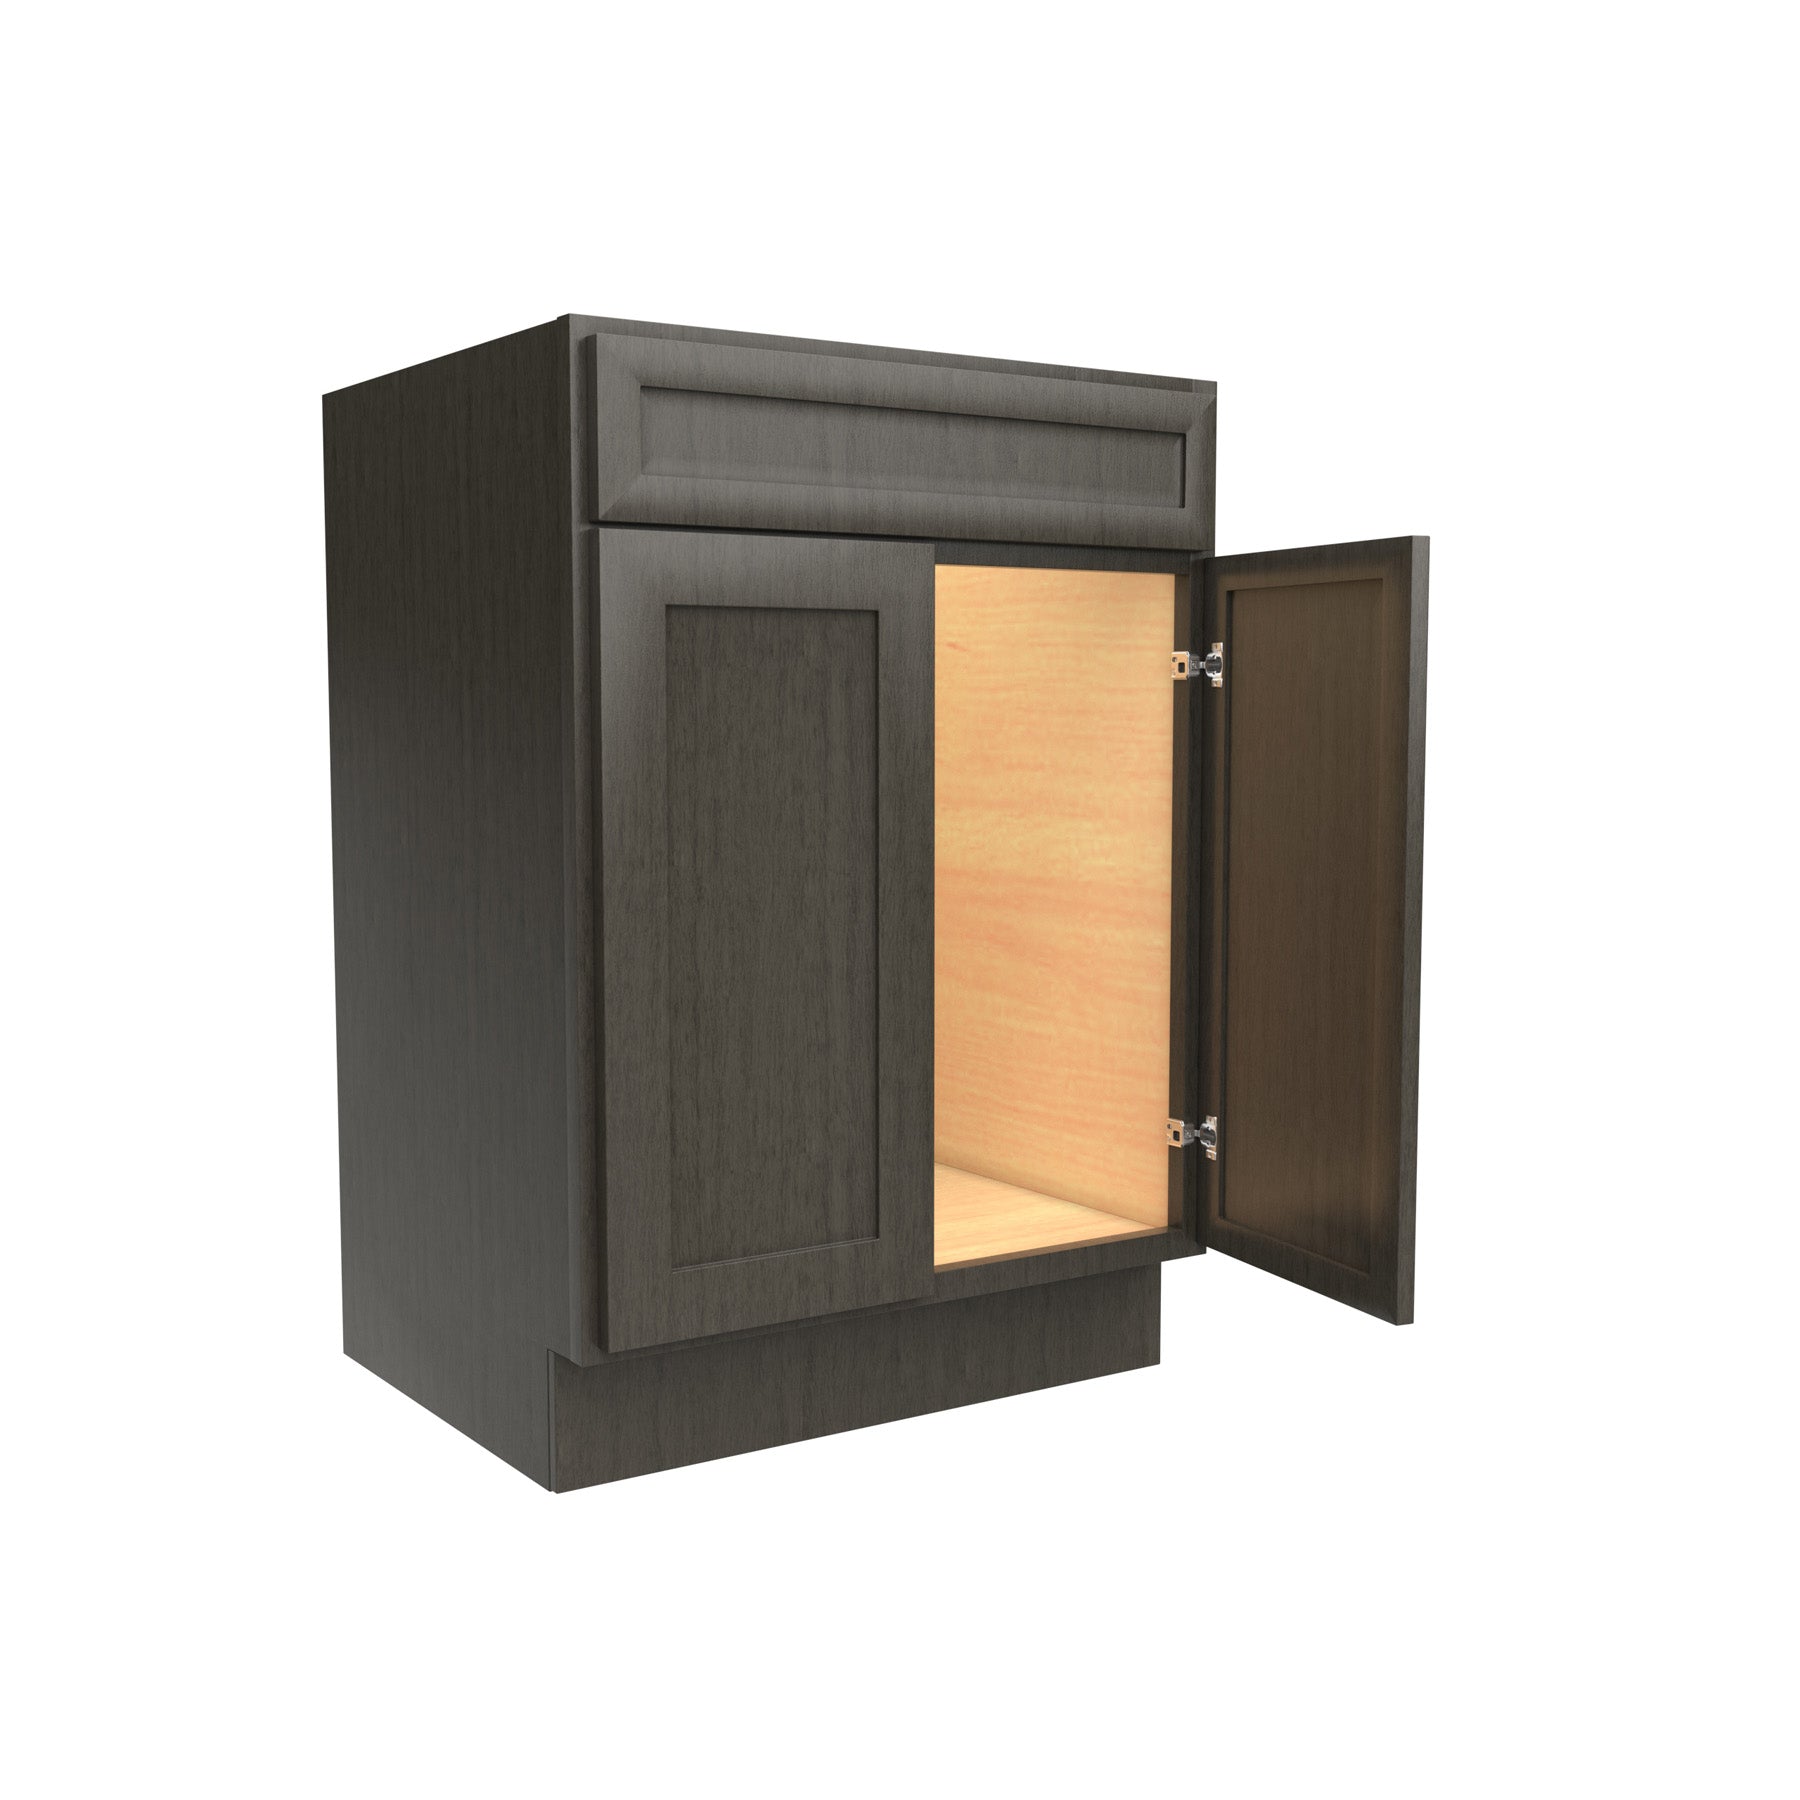 RTA - Elegant Smoky Grey - Double Door Vanity Sink Base Cabinet | 24"W x 34.5"H x 21"D